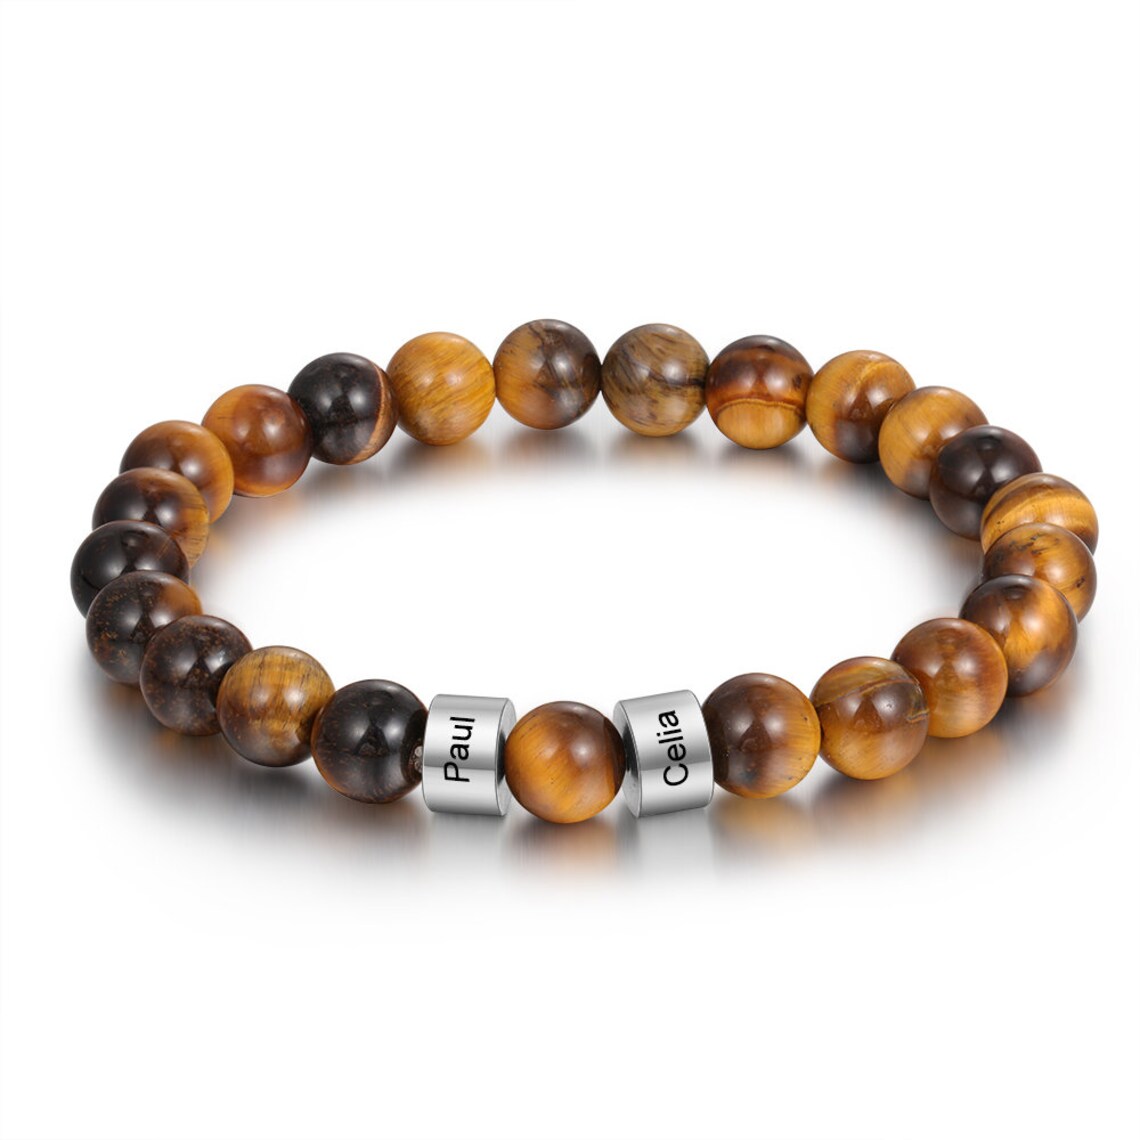 Customized Lava Tiger Eye Stone Beads Bracelet for Men